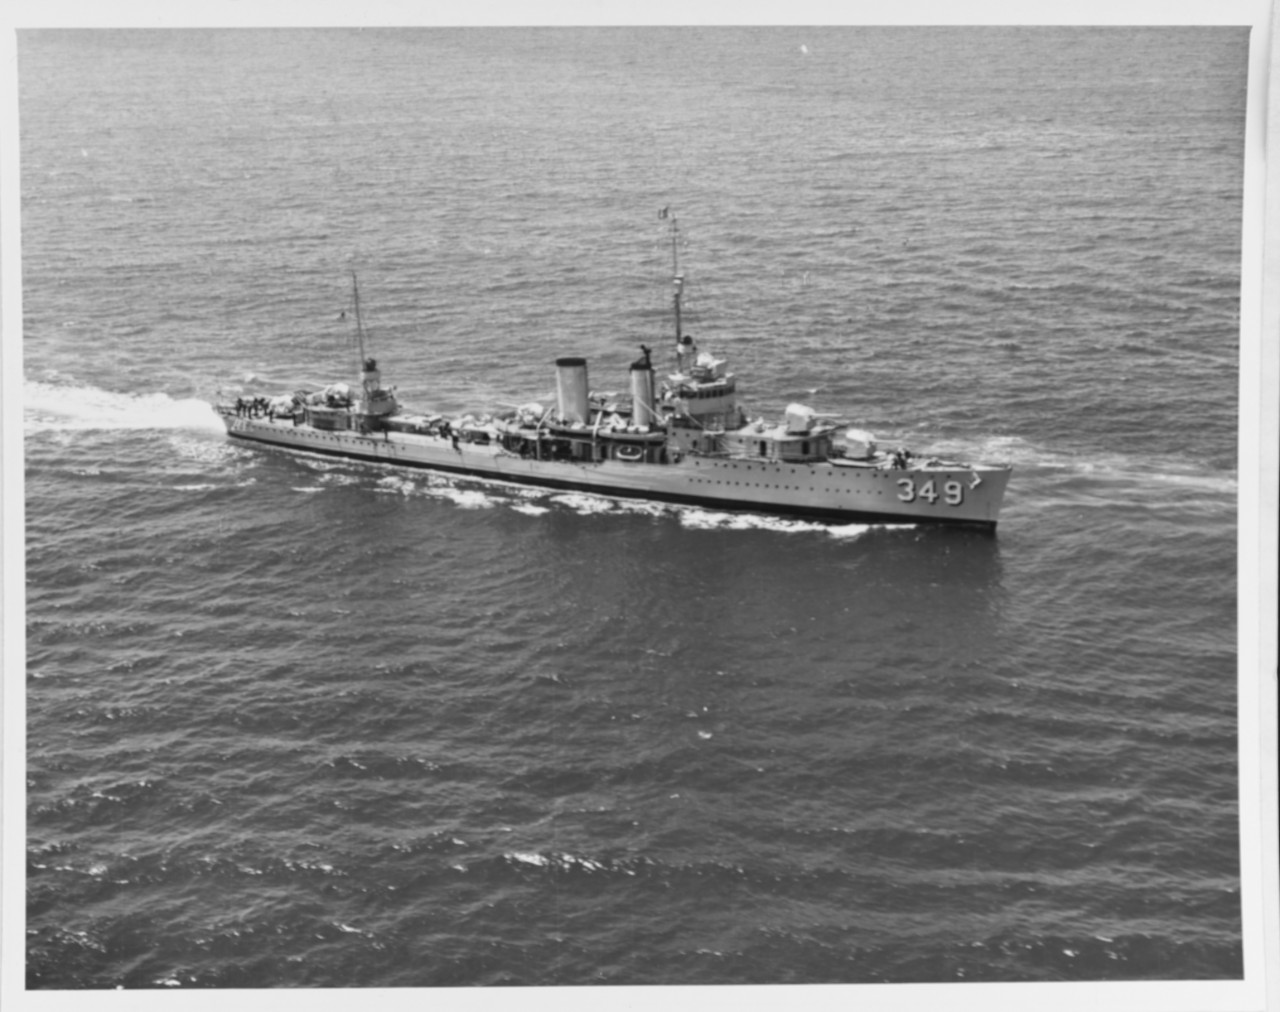 USS DEWEY (DD-349)